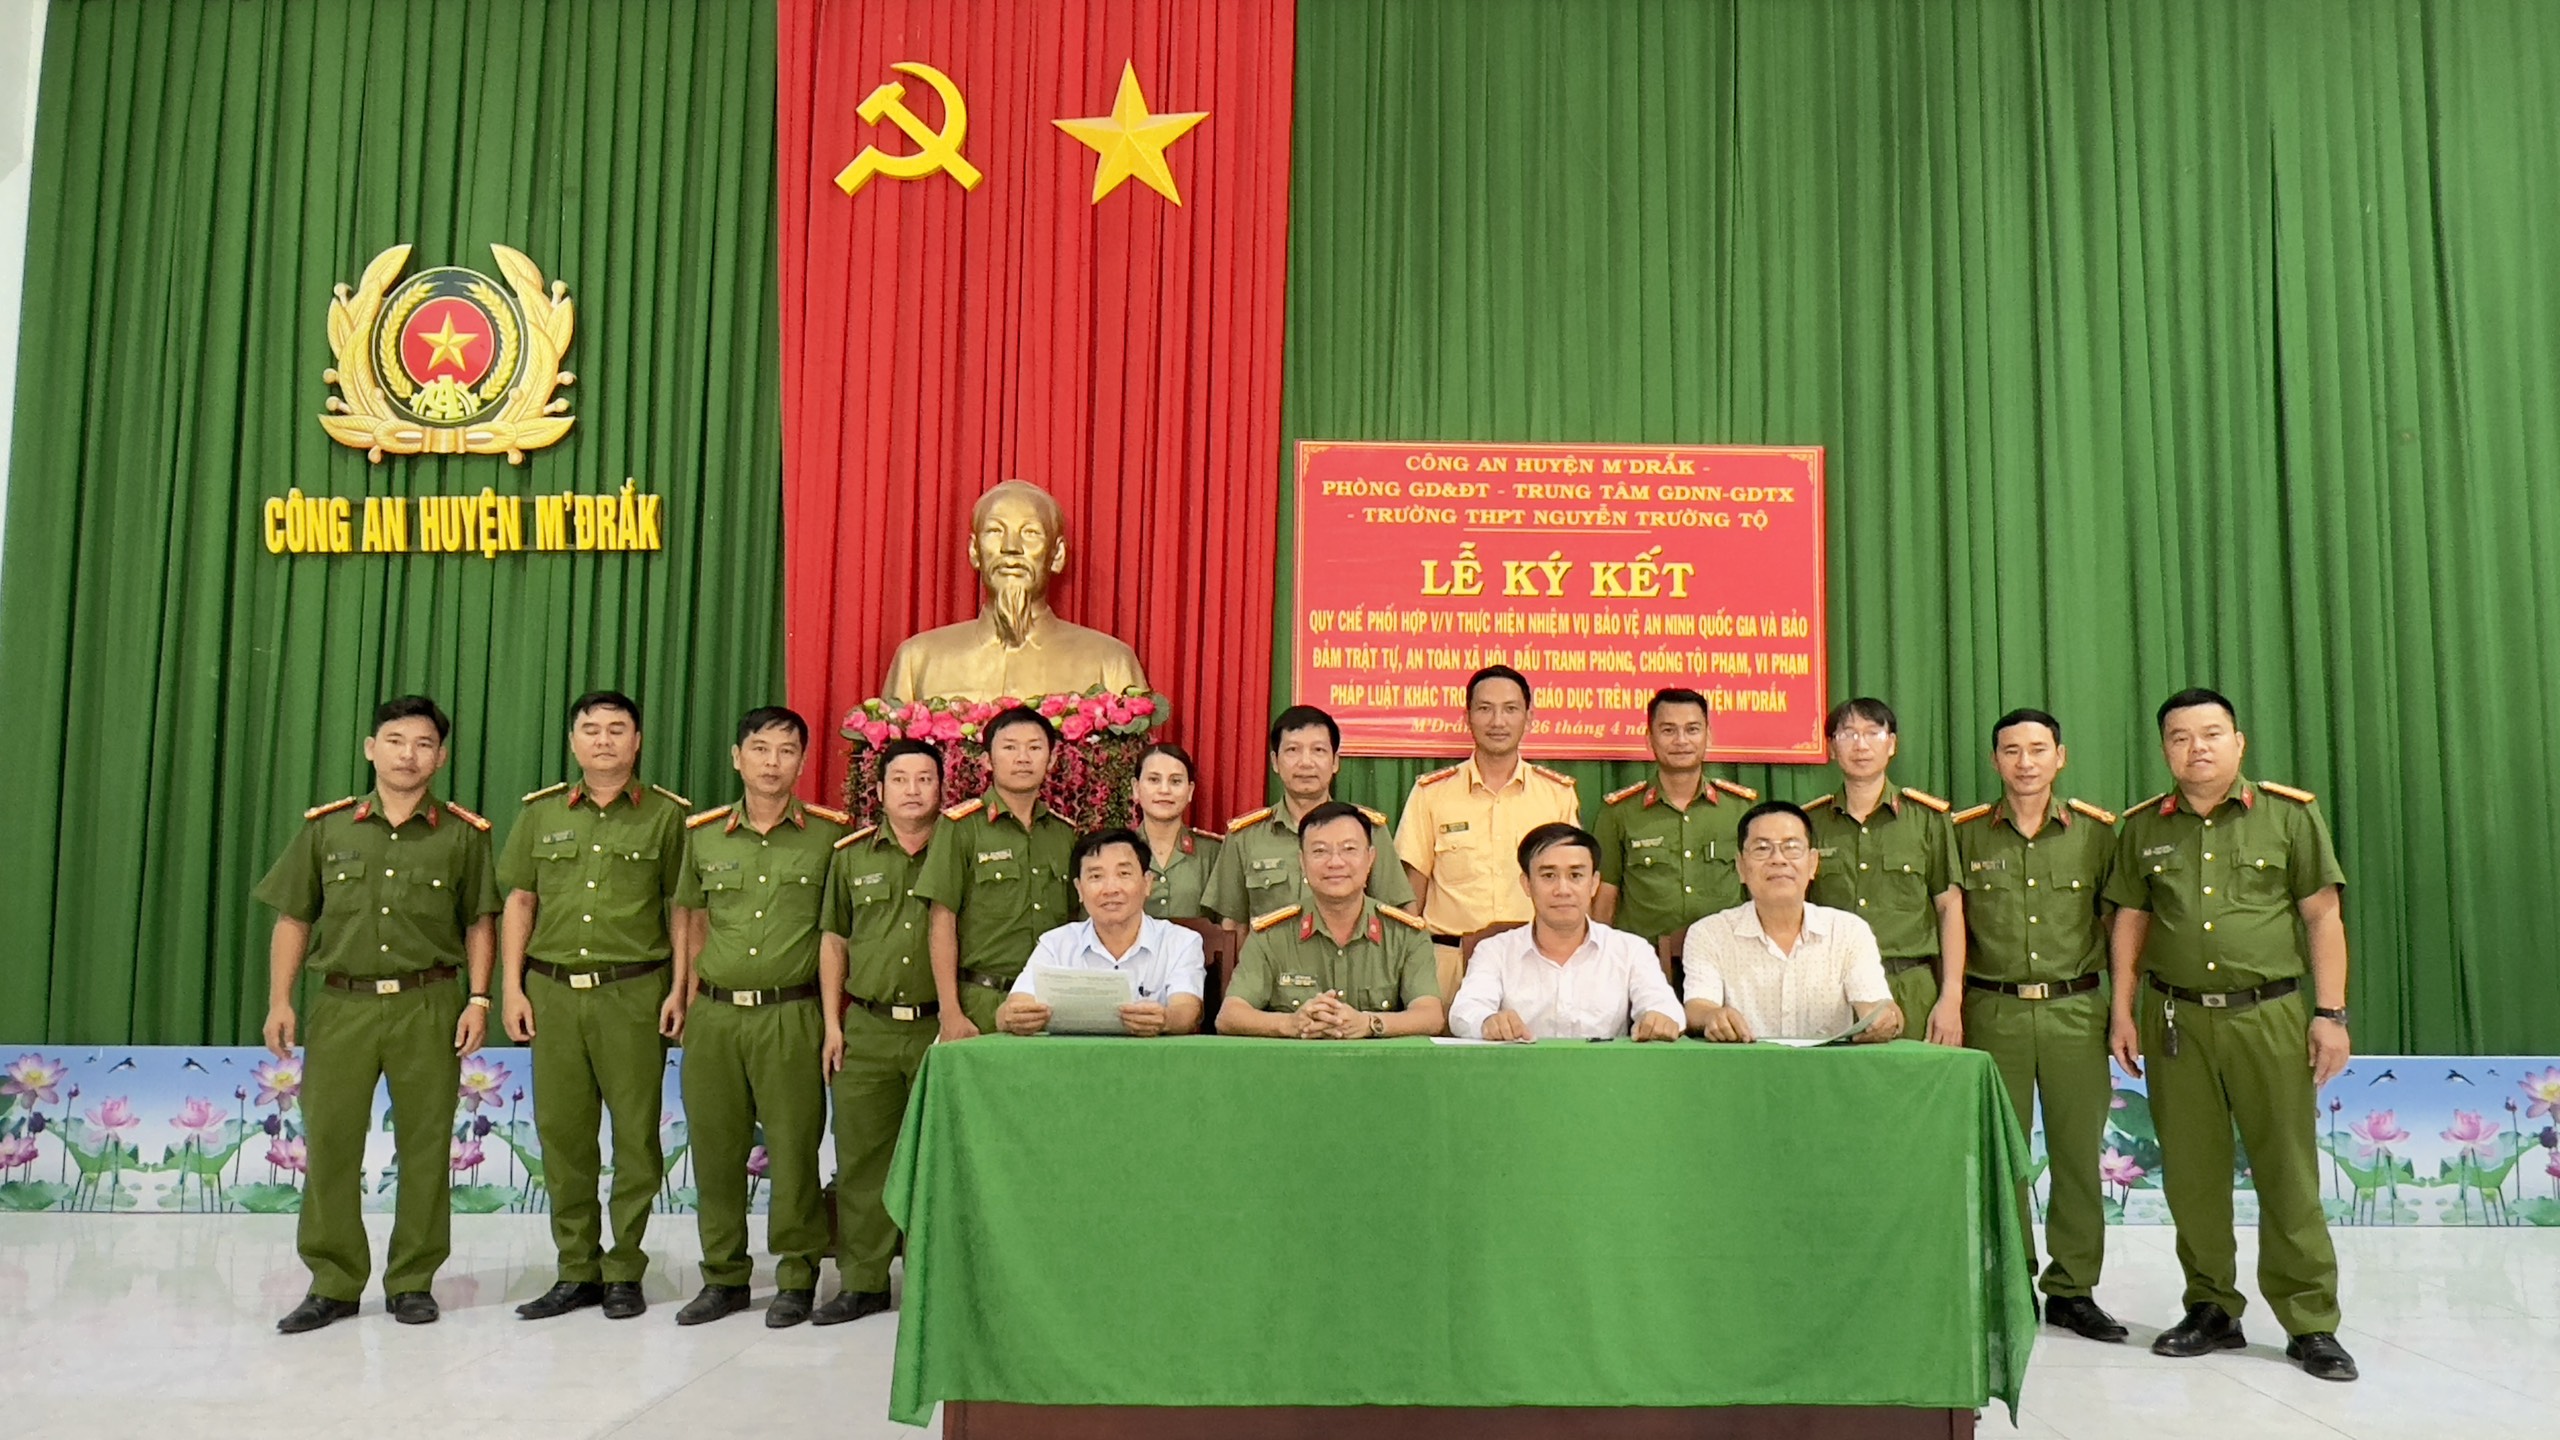 Ký kết quy chế phối hợp bảo đảm an ninh trật tự trên địa bàn huyện M’Drắk